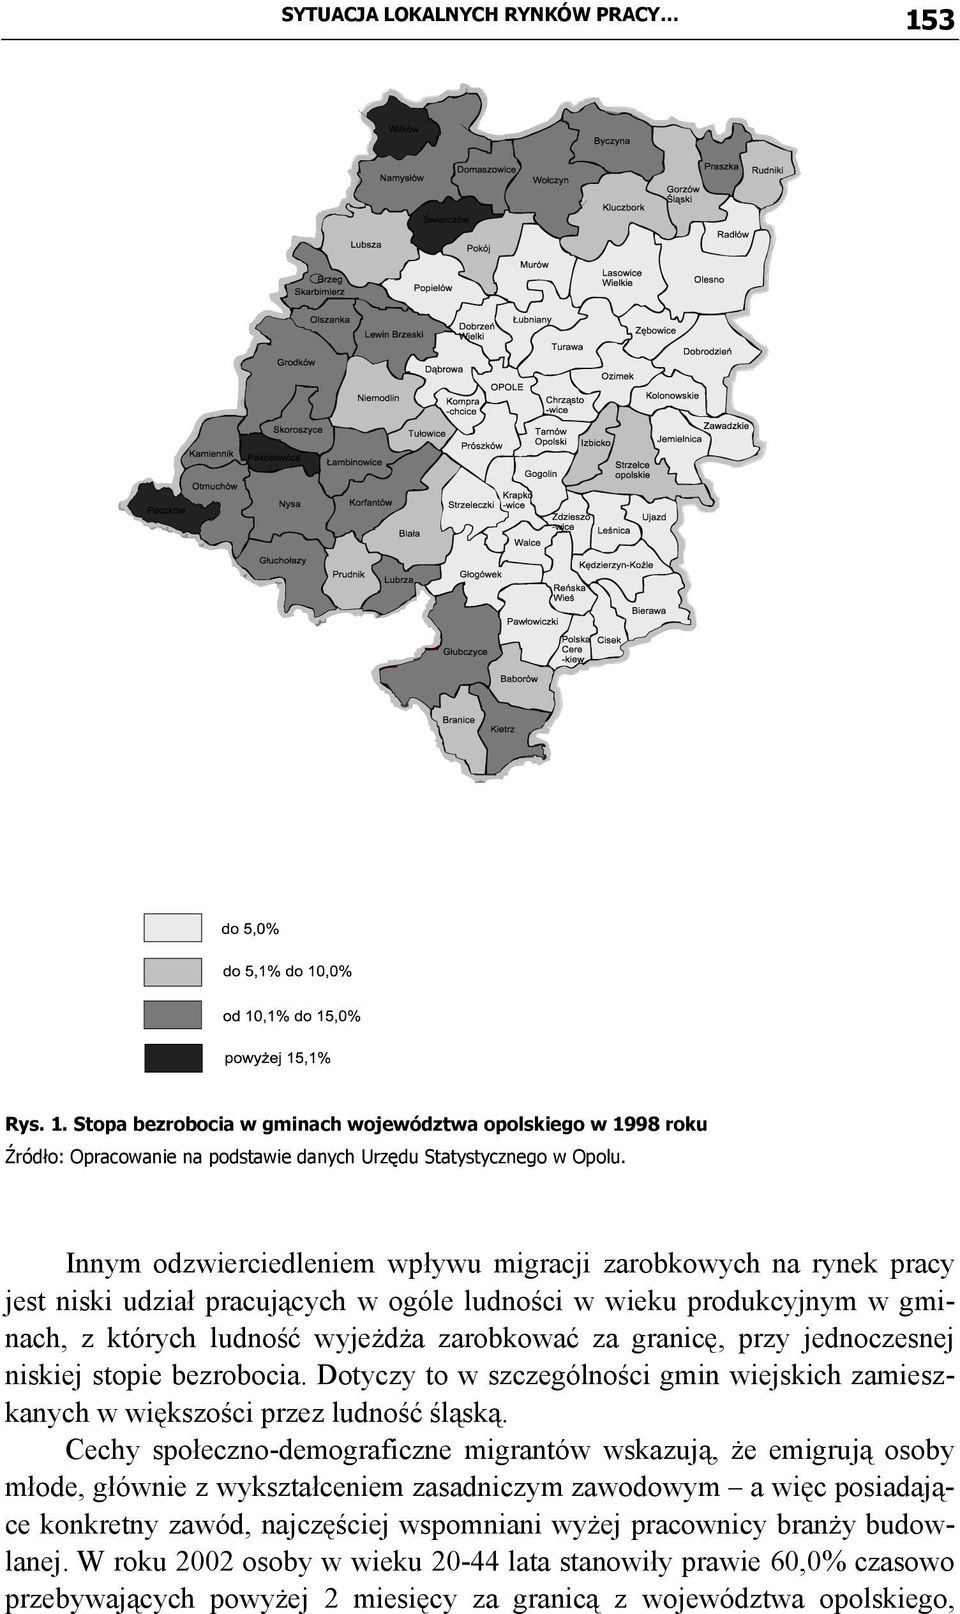 przy jednoczesnej niskiej stopie bezrobocia. Dotyczy to w szczególności gmin wiejskich zamieszkanych w większości przez ludność śląską.